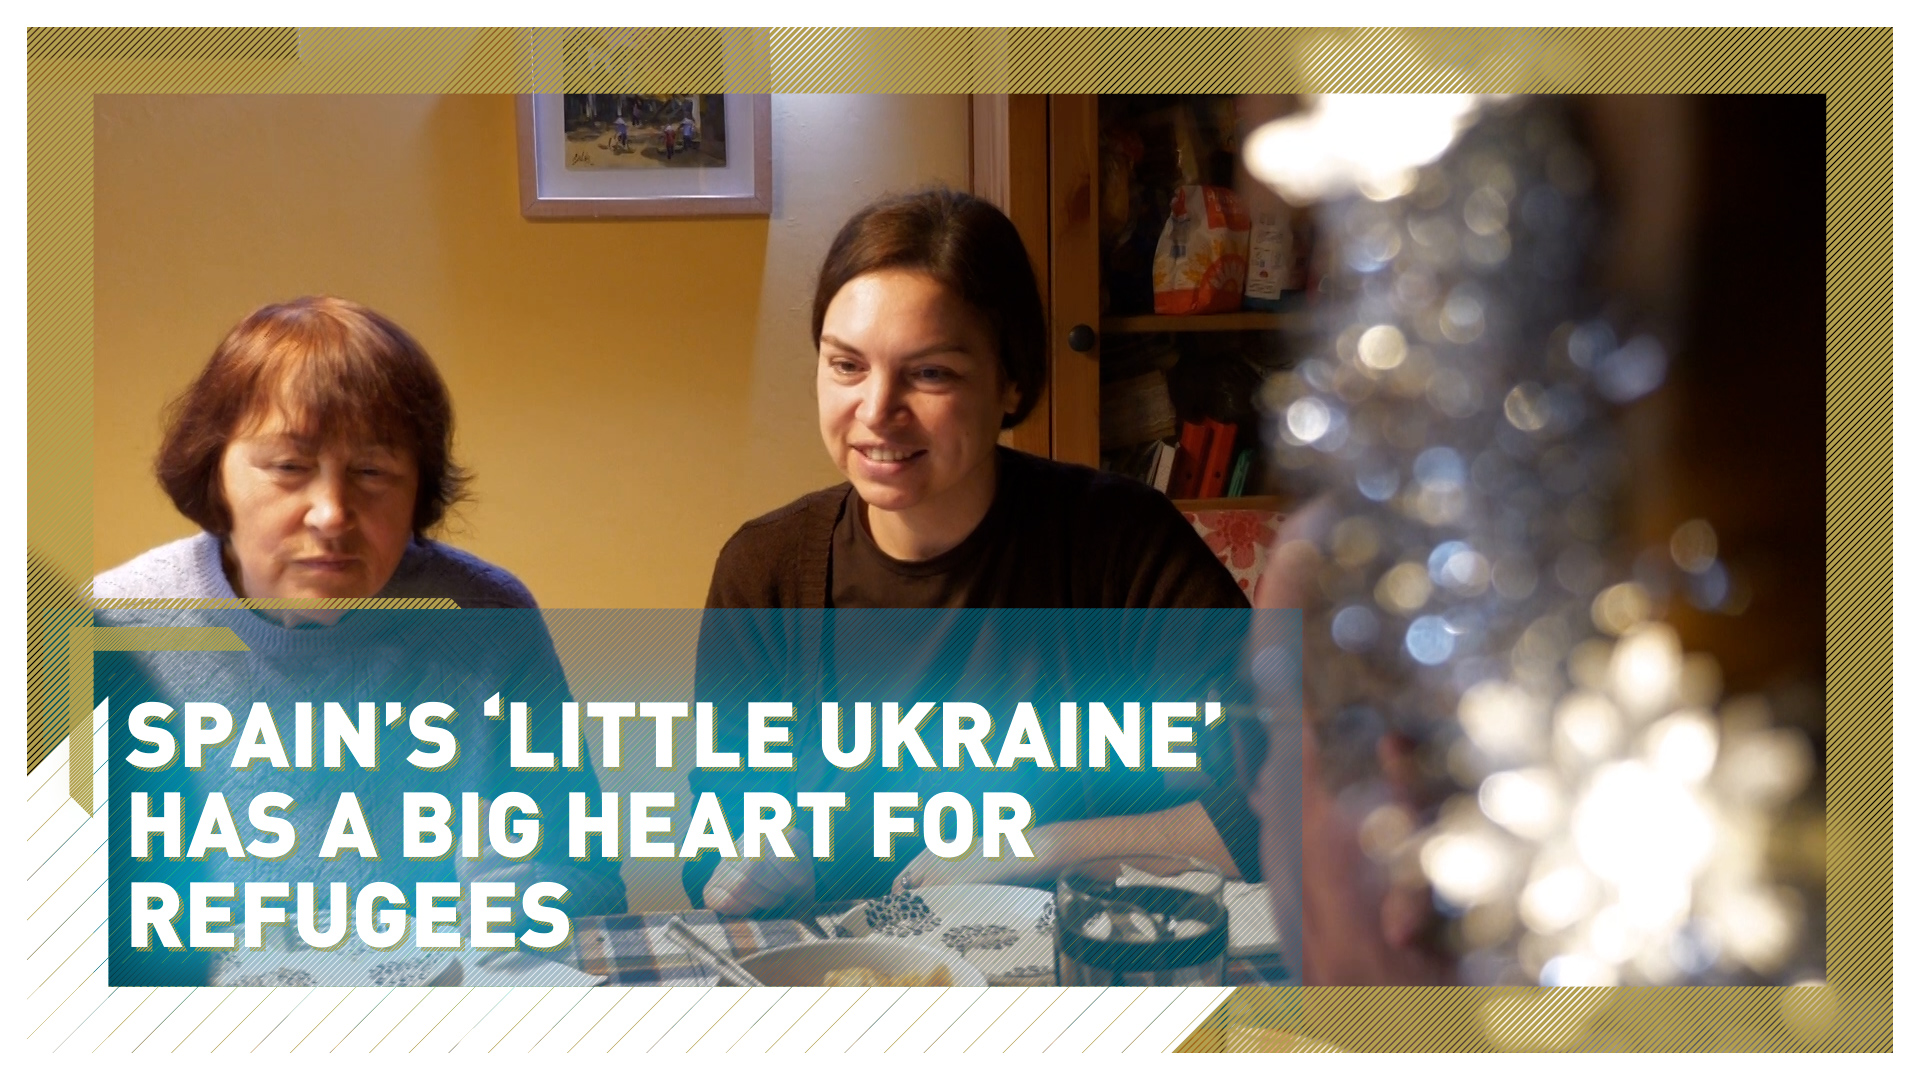 La «pequeña Ucrania» española tiene un gran corazón de refugiados